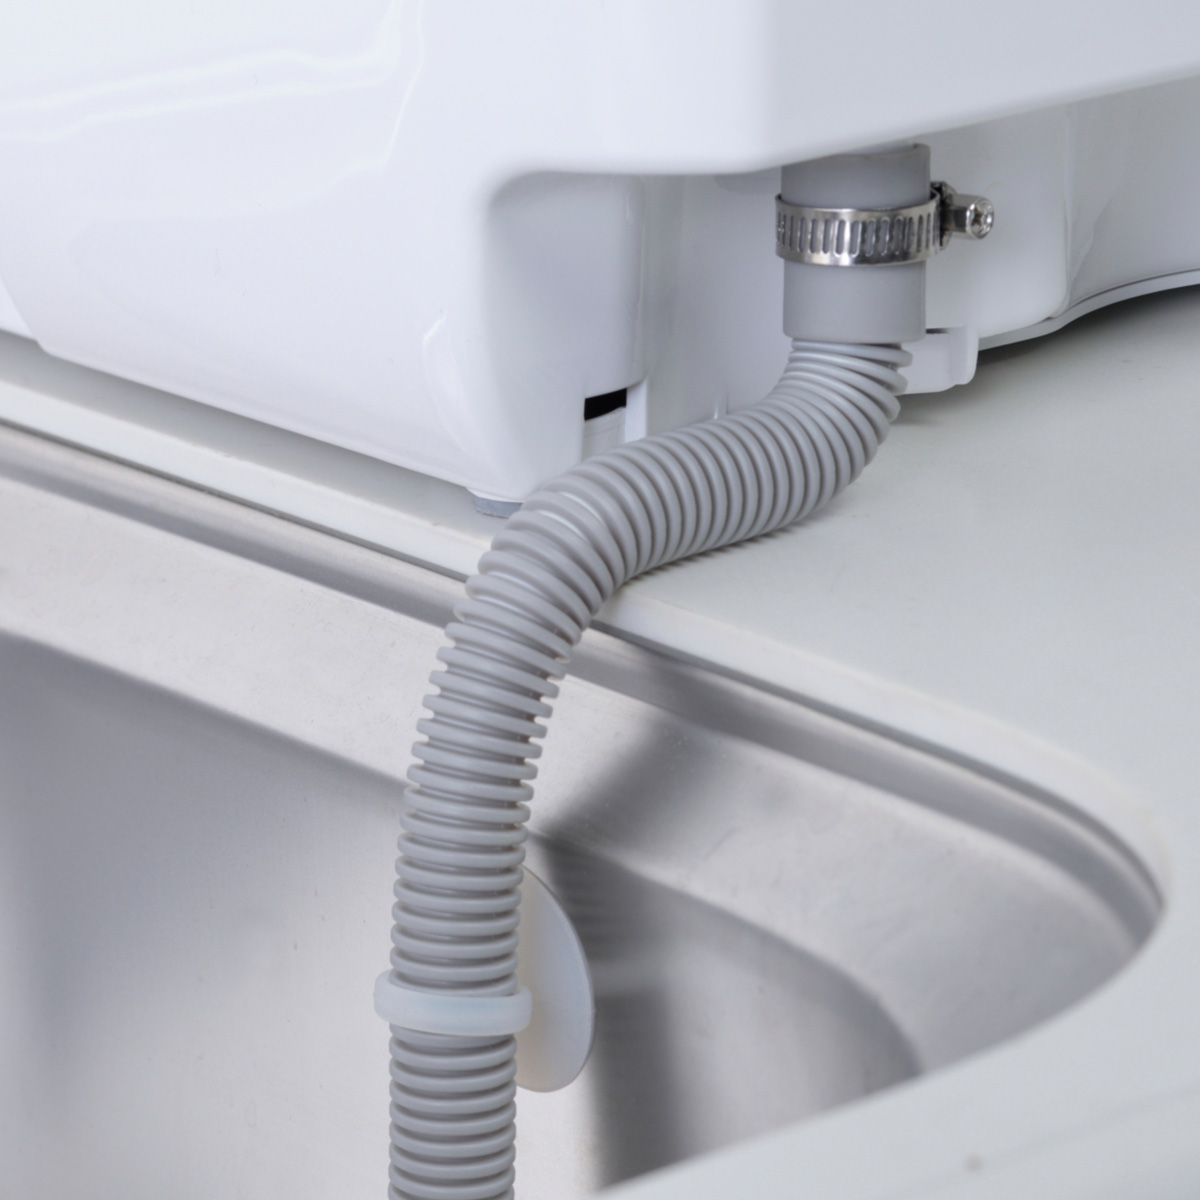 スマートディッシュウォッシャー ＵＶ除菌食器洗い乾燥機